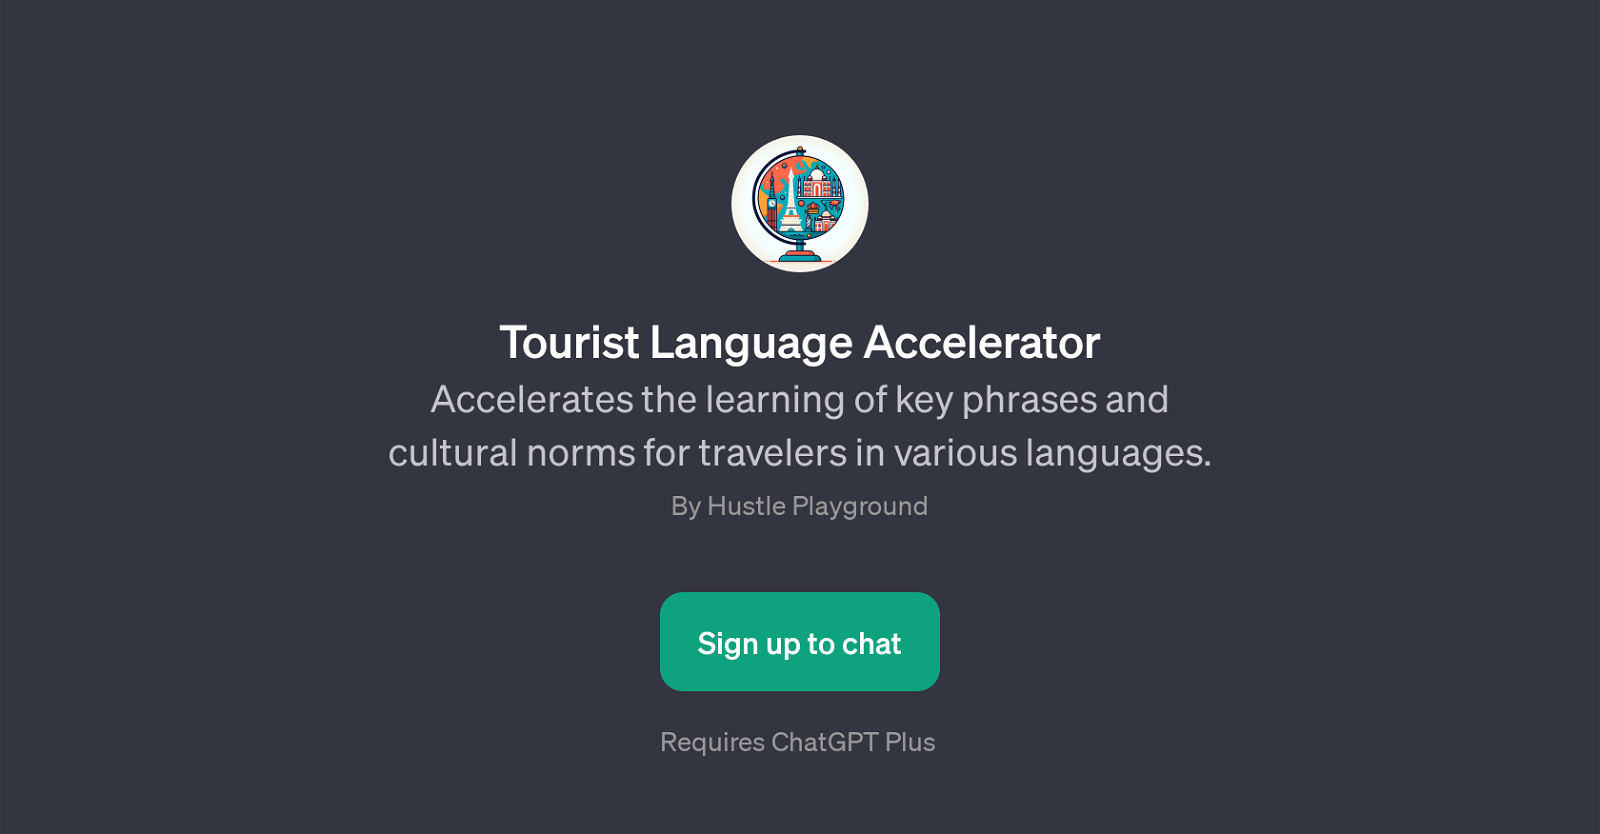 Tourist Language Accelerator website